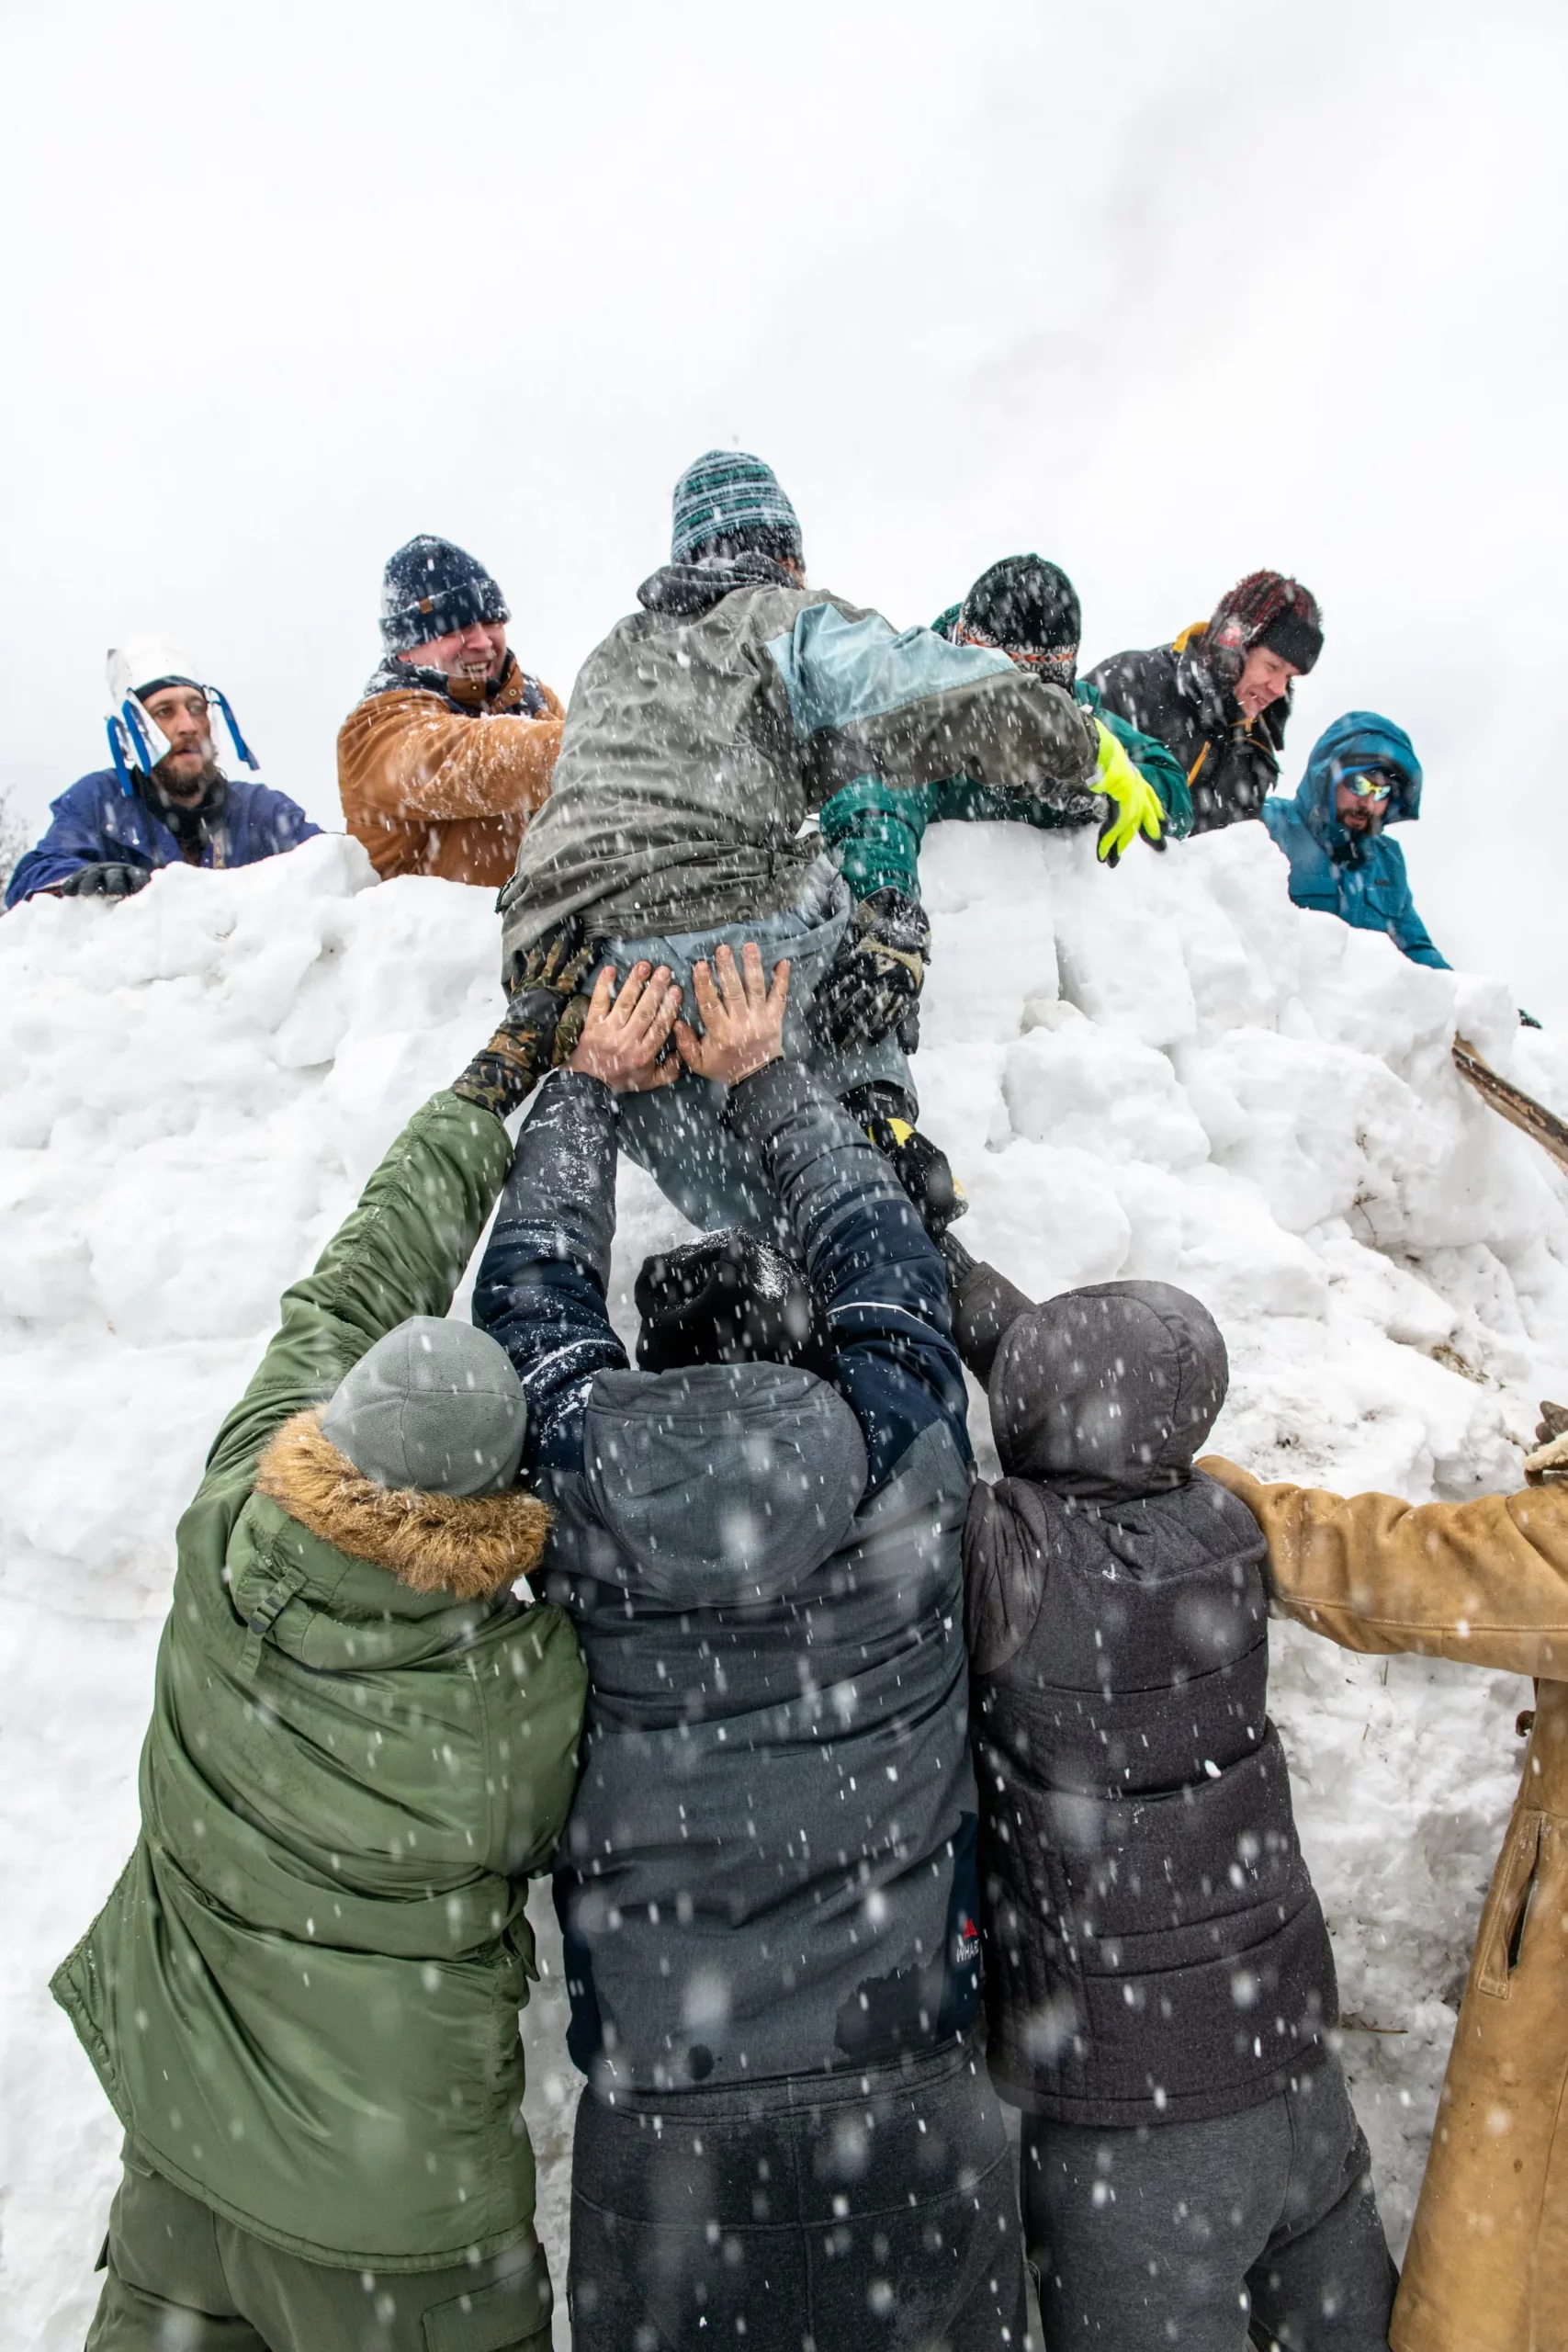 Personas ayudando a un alpinista a subir una montaña de nieve, representando el trabajo en equipo y liderazgo para lograr un objetivo y realizar una tarea con control y calidad.